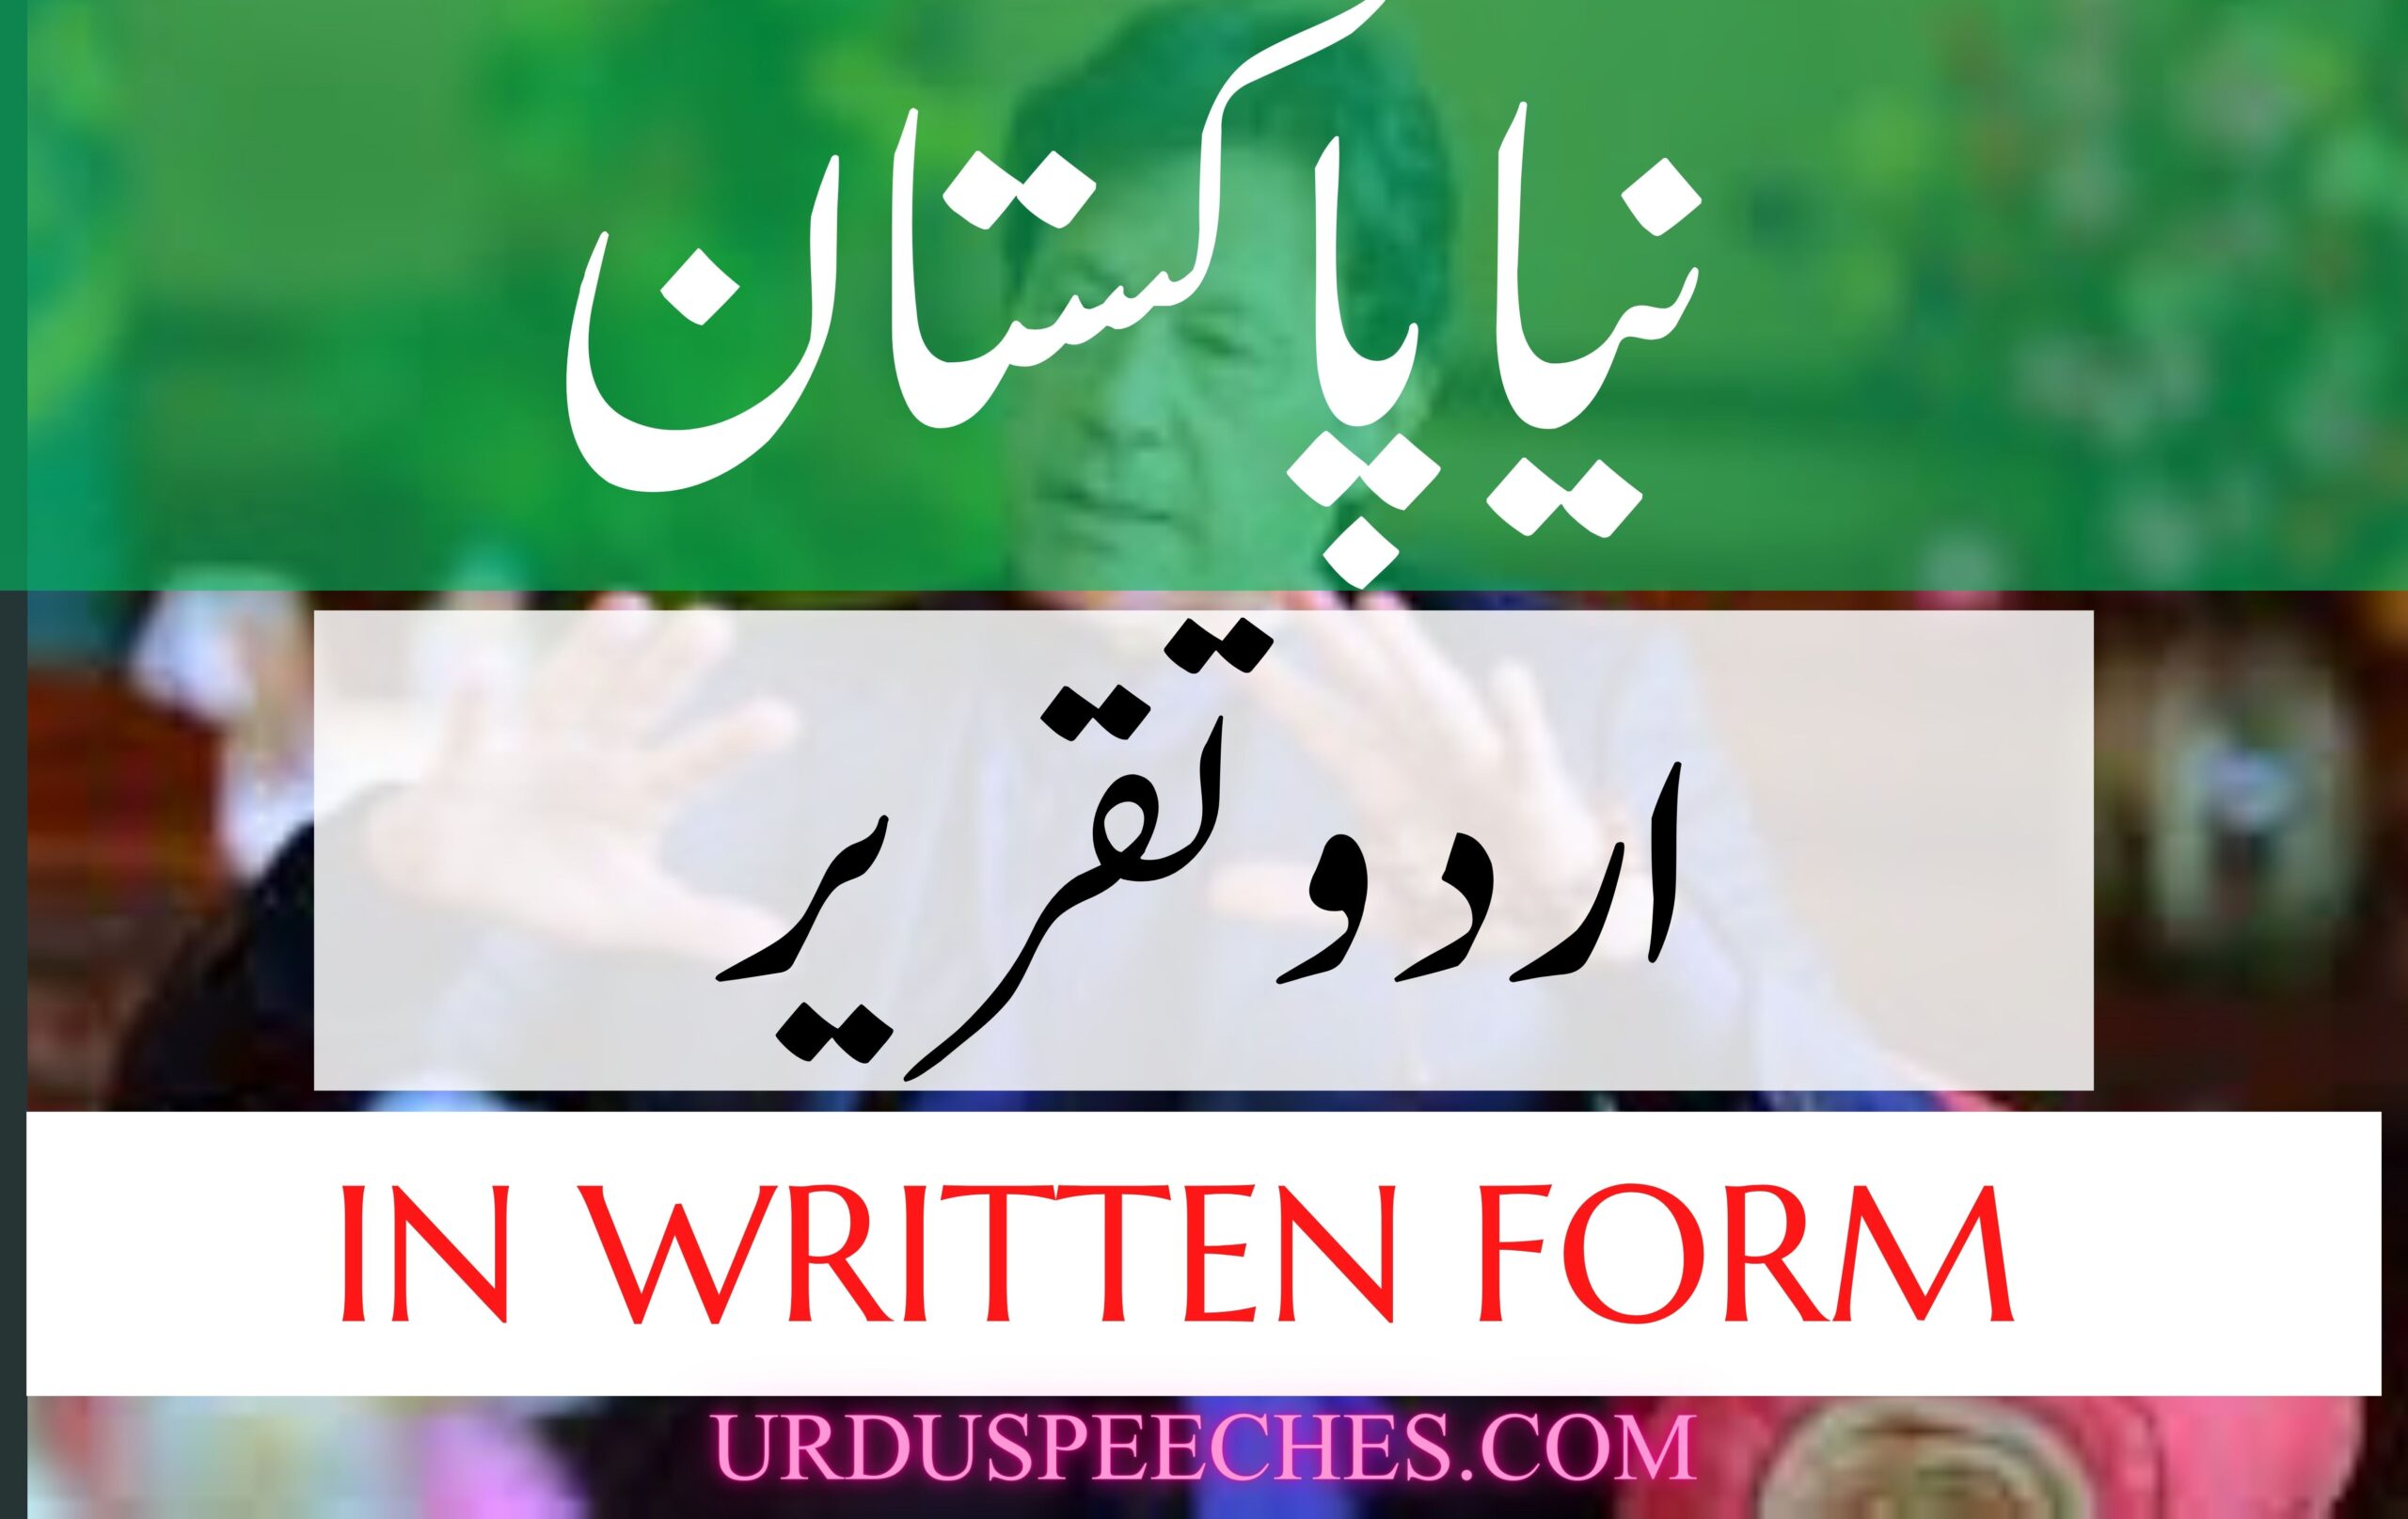 urdu-speech-on-imran-khan-in-written-form